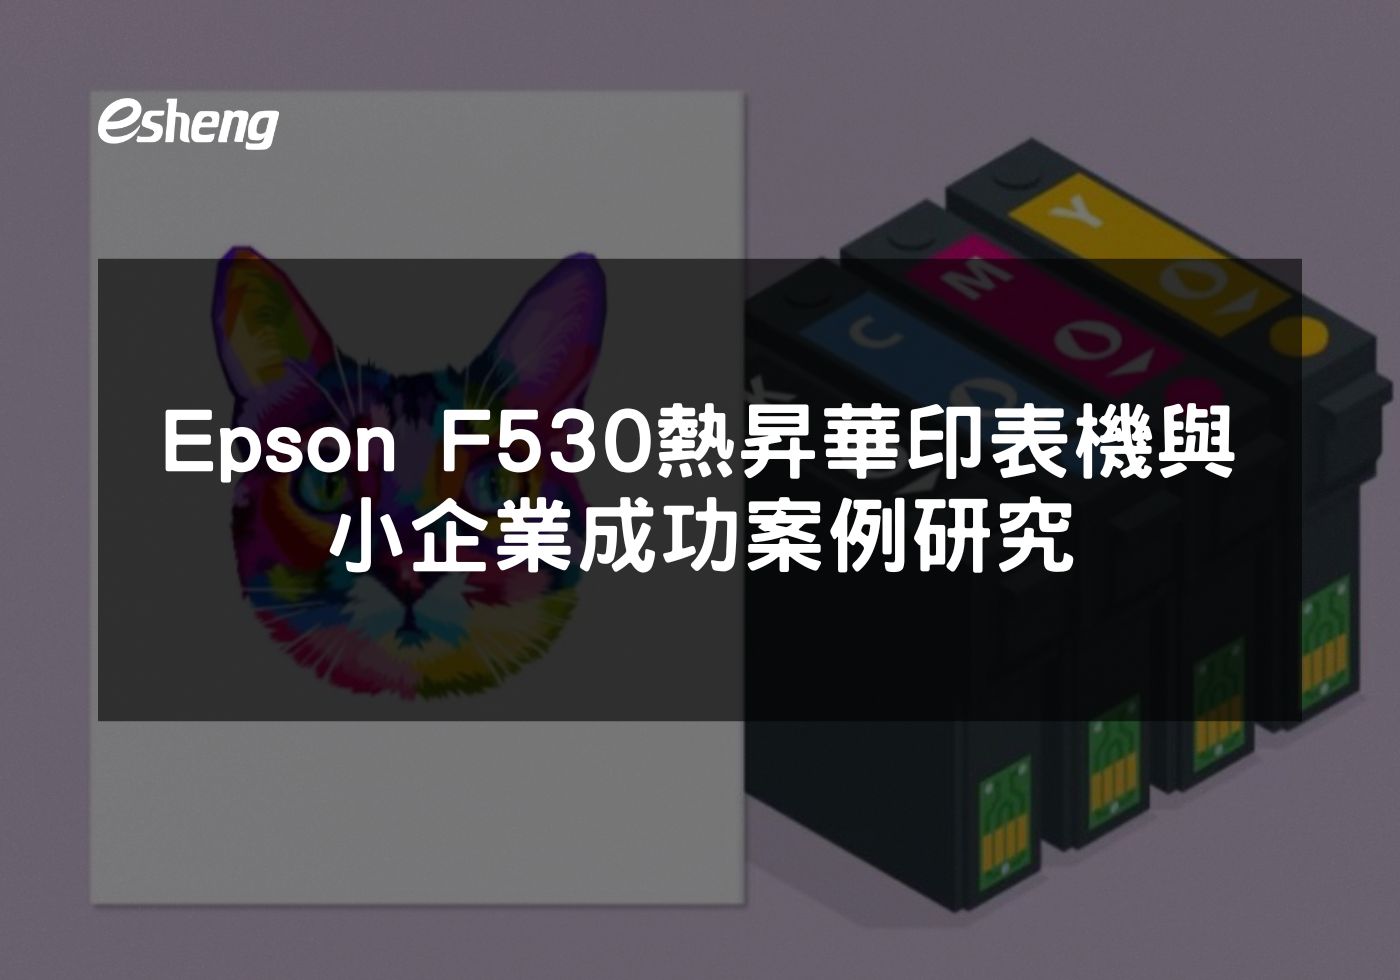 閱讀更多文章 Epson F530熱昇華印表機與小企業成功案例研究